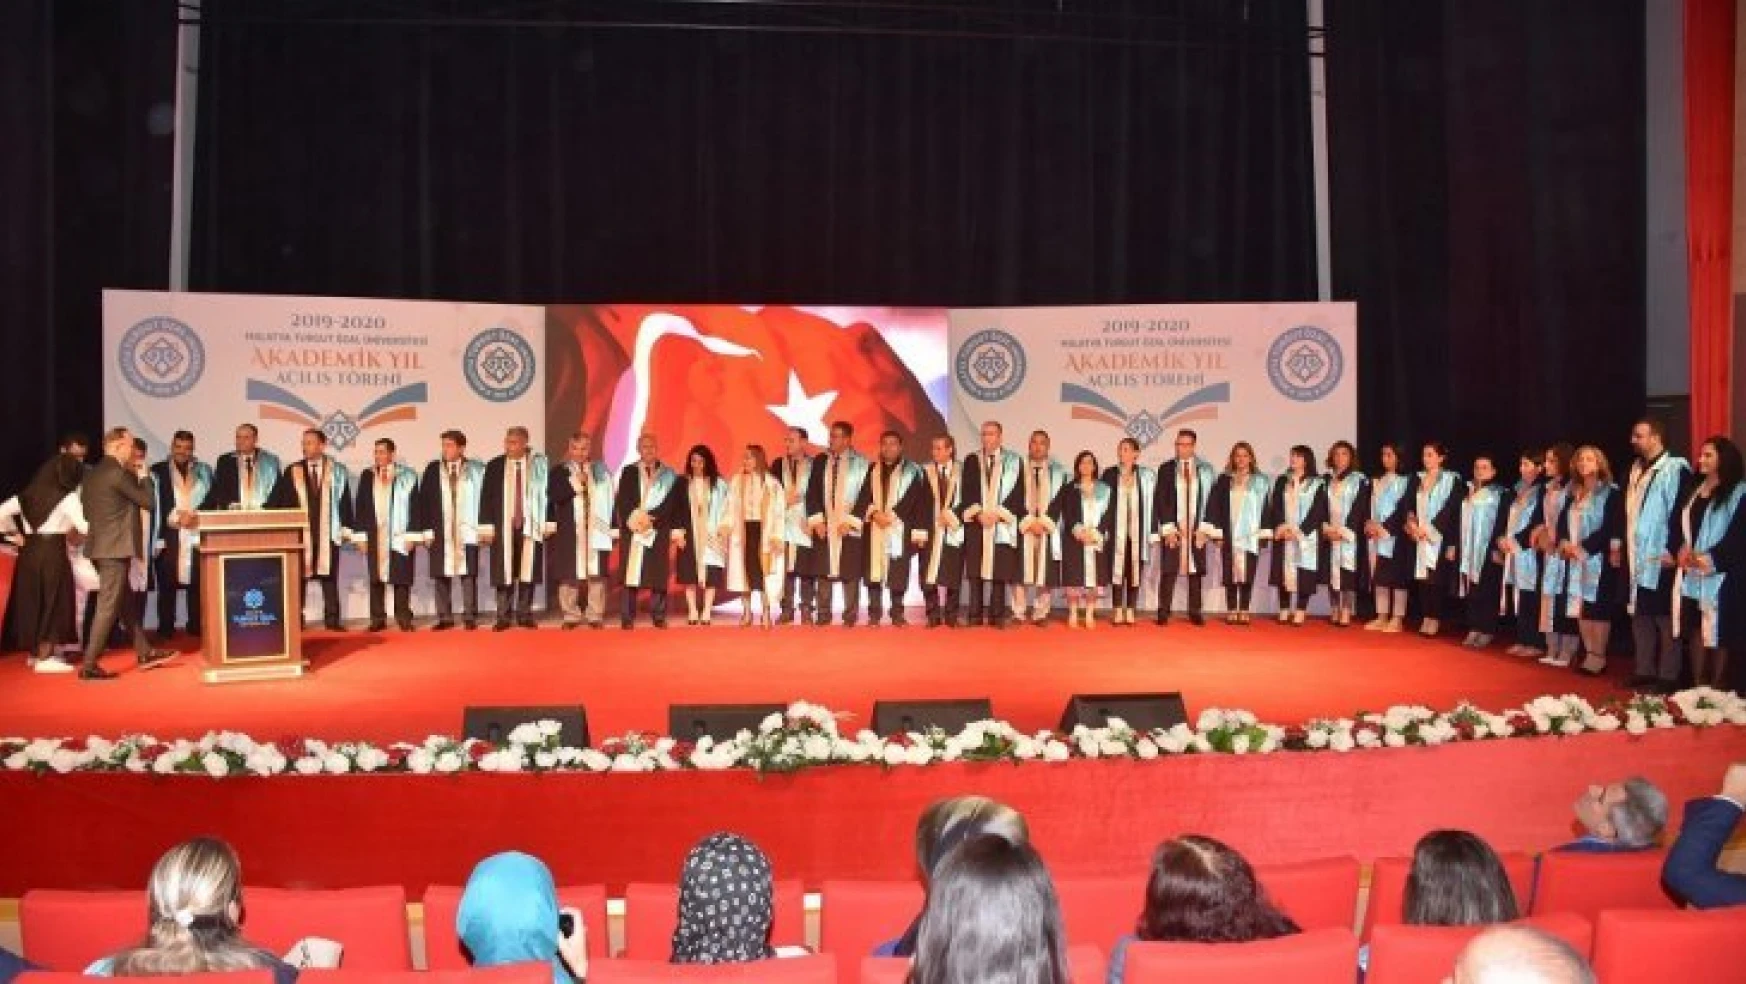 Malatya Turgut Özal Üniversitesi'nin  2019-2020 akademik yılı açılış töreni yapıldı.